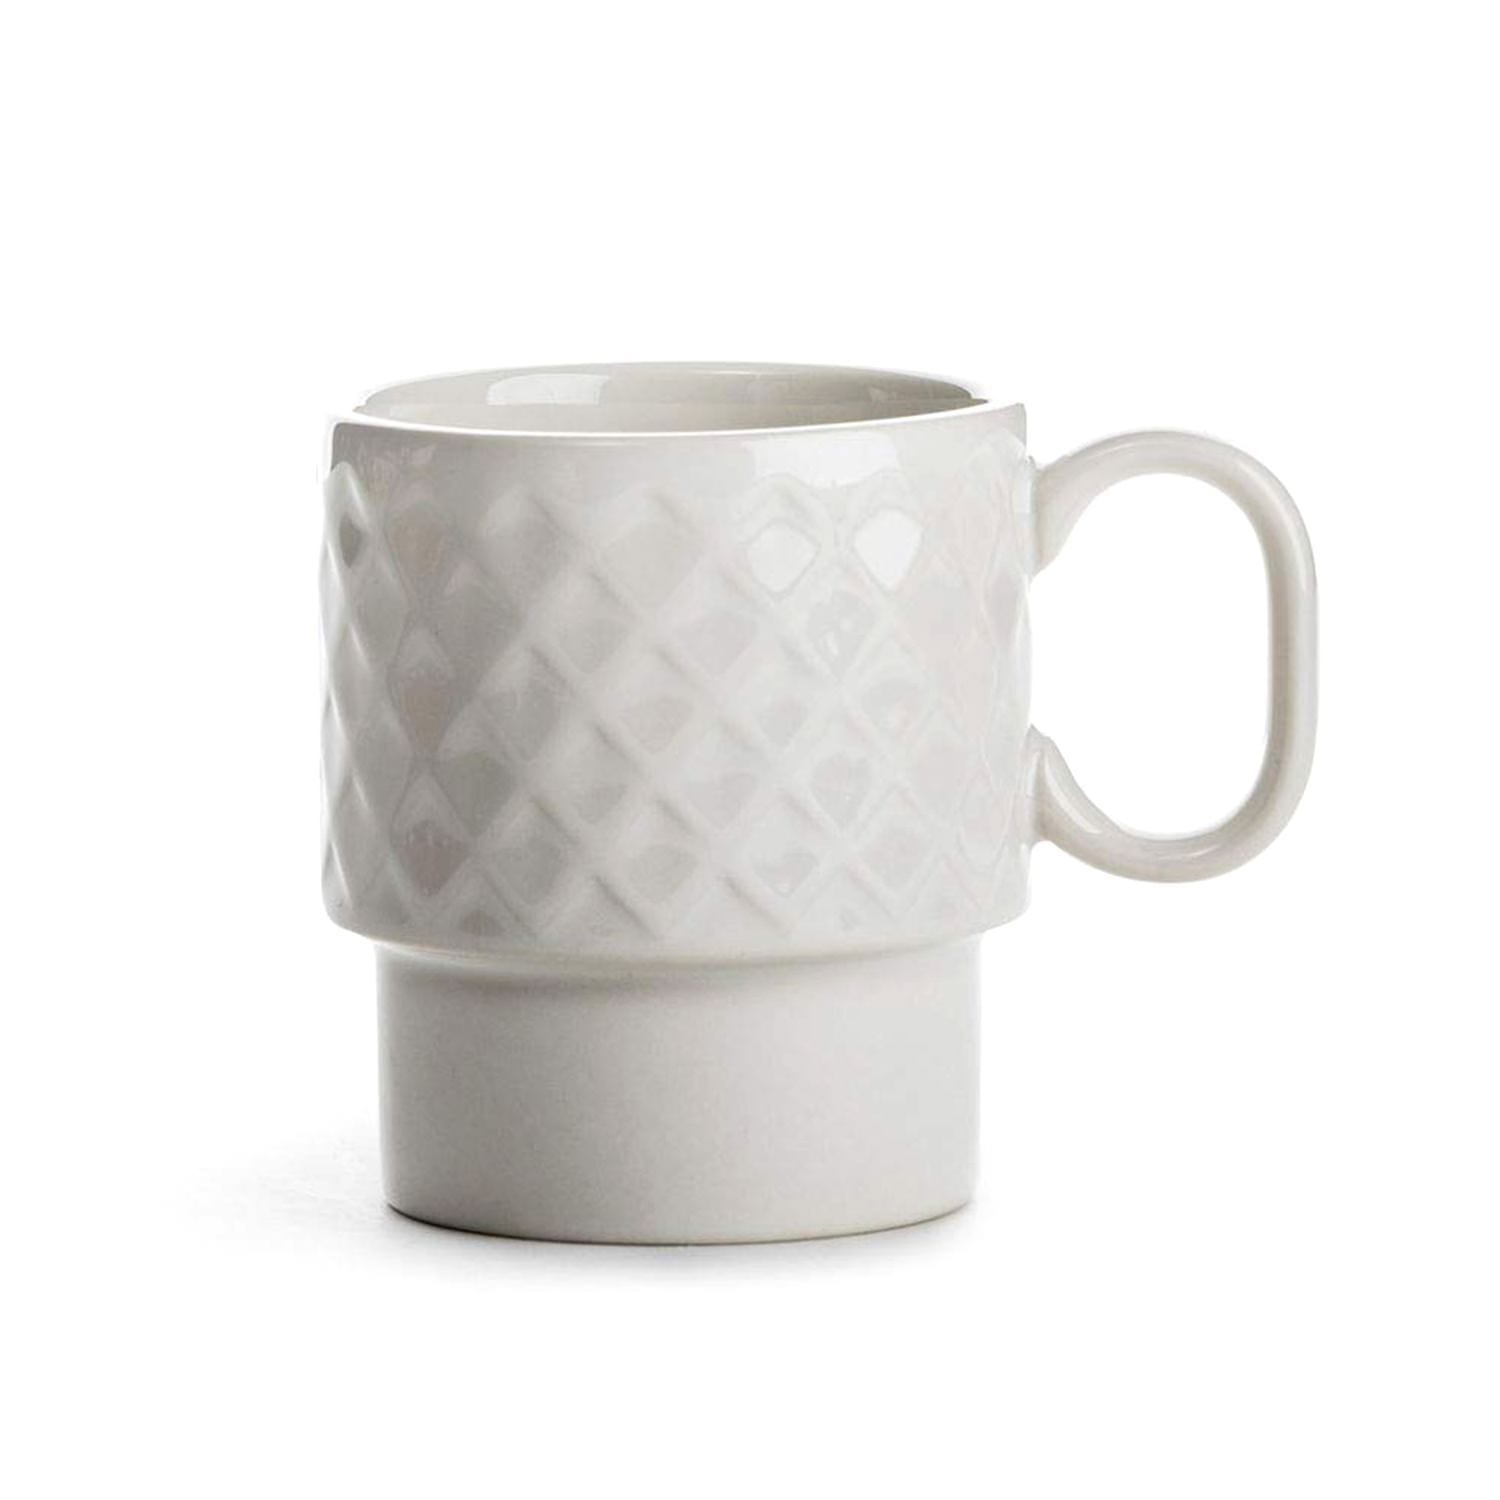 Sagaform Coffee & More Coffee Mug Set of 2 - White, 250 ml - SA5017874 - Jashanmal Home